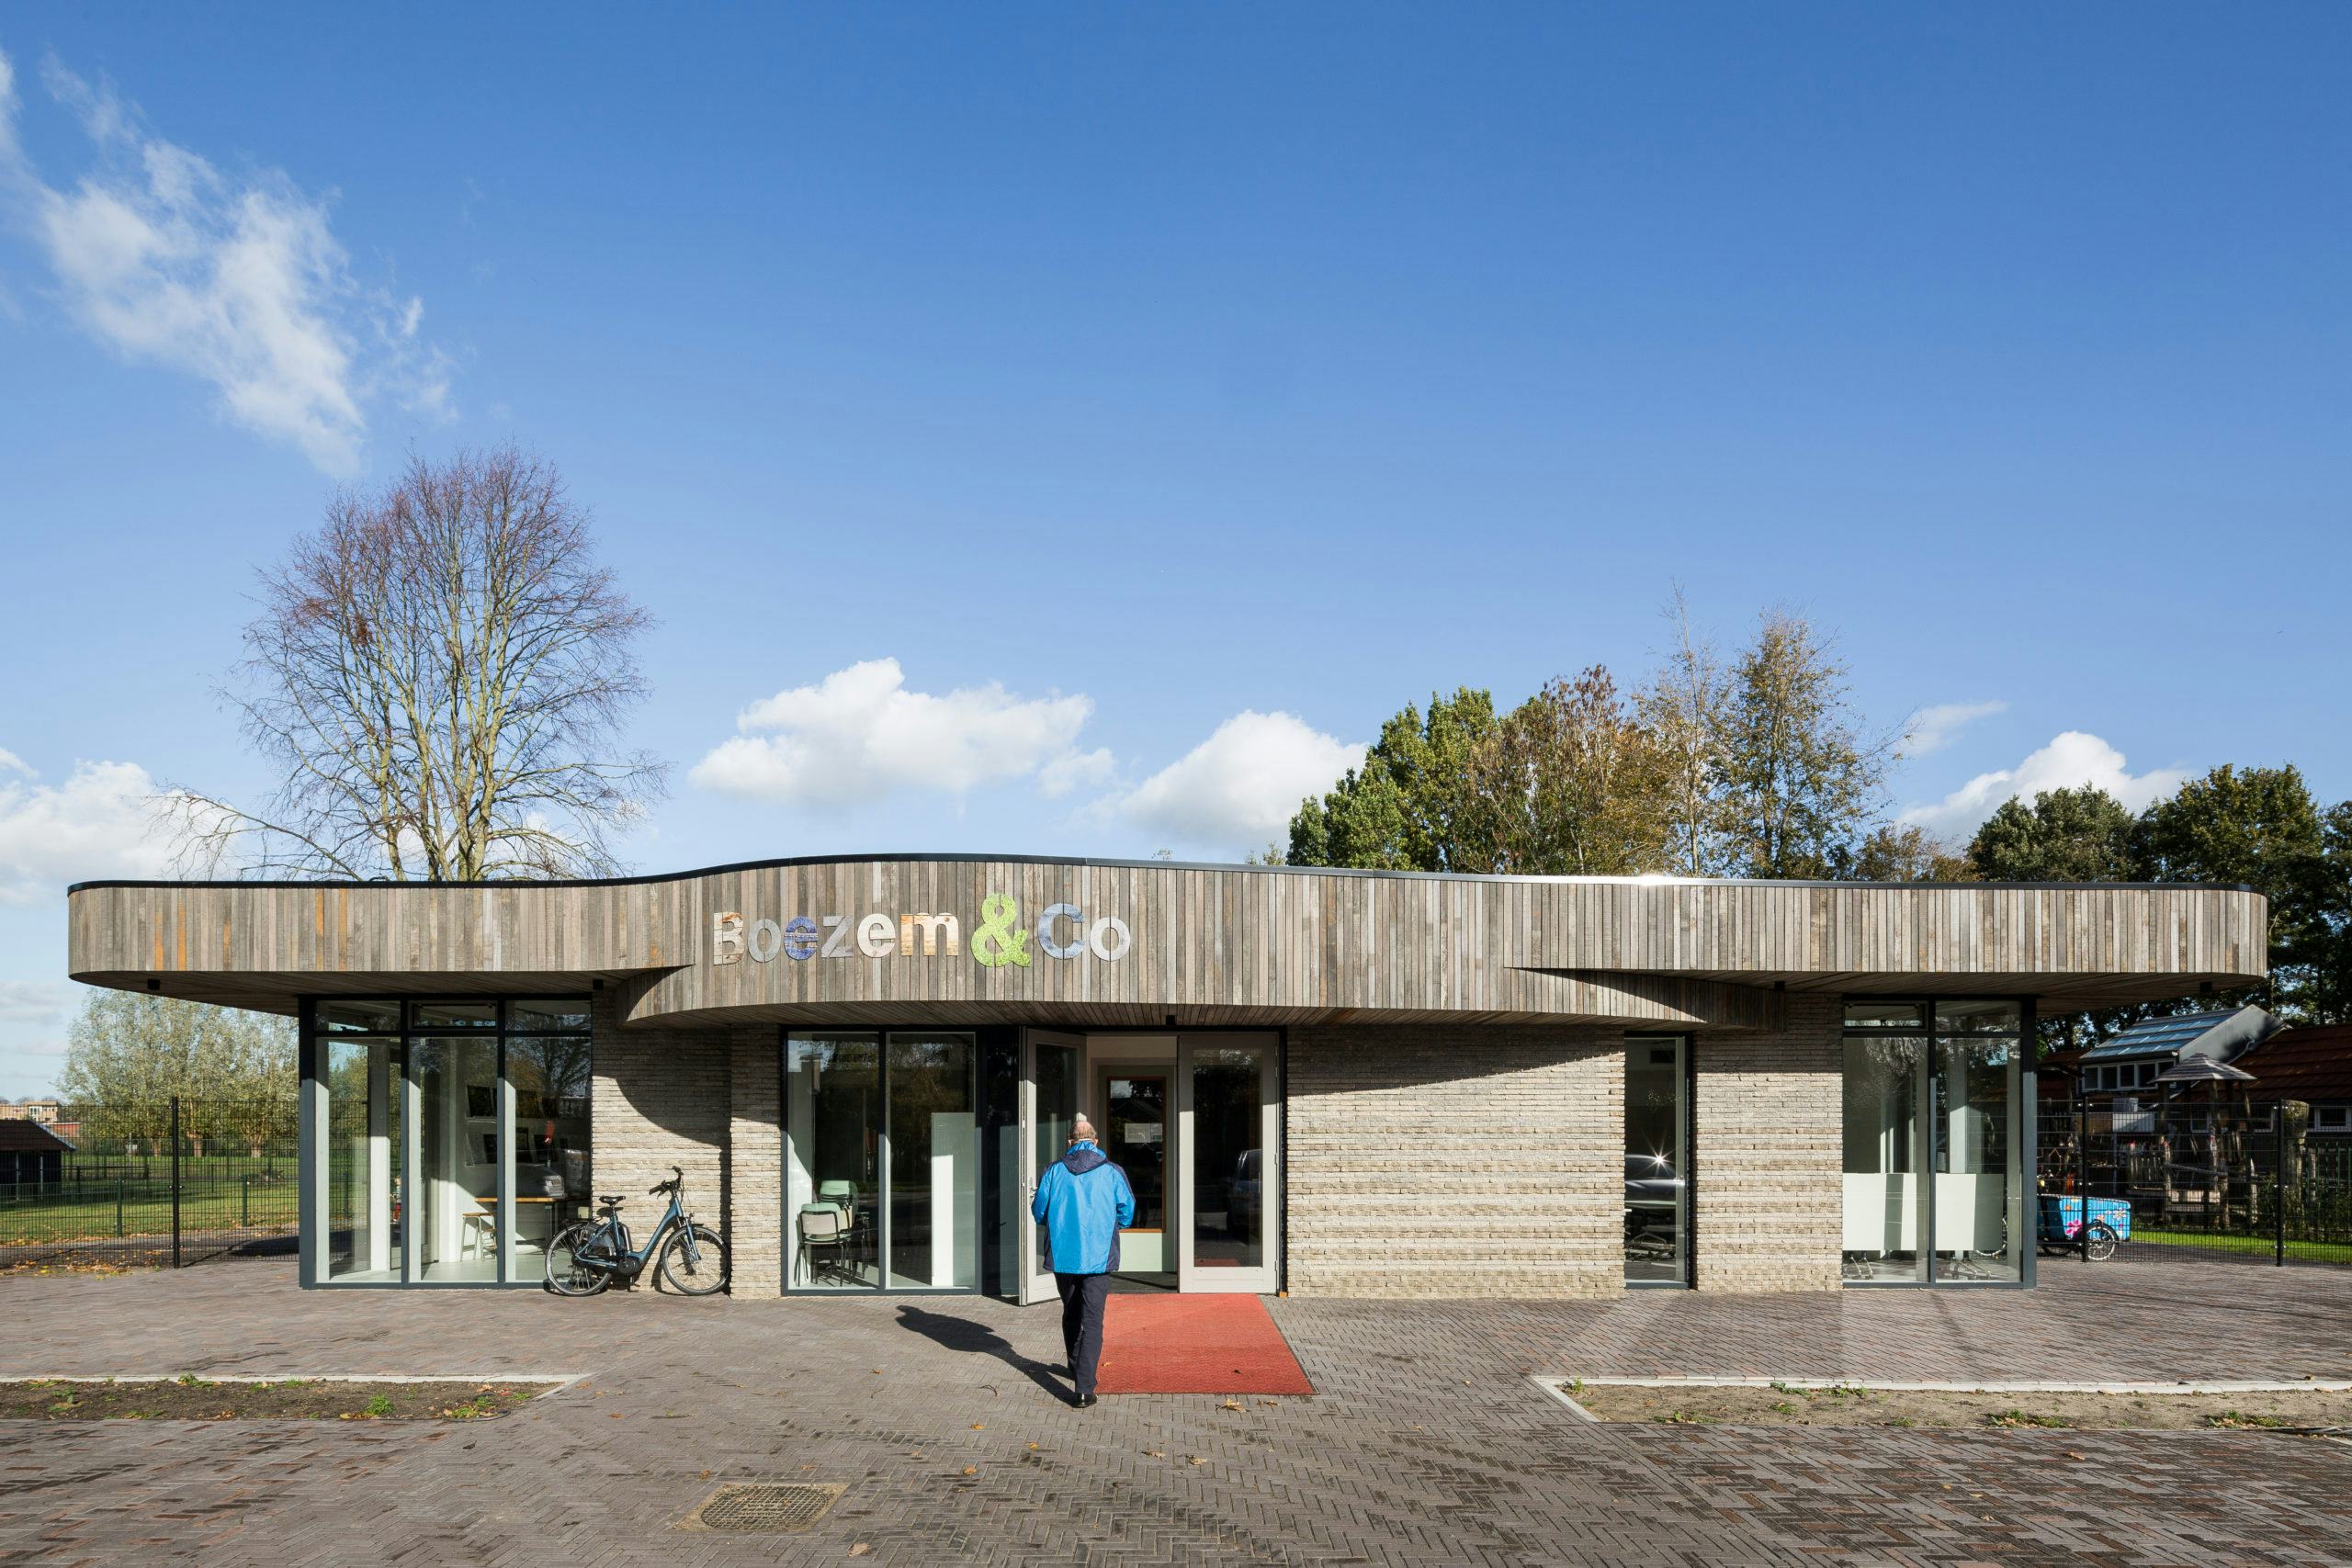 Circulaire MFA De Boezem & Co in Oud-Bijerland door RoosRos Architecten. Beeld Lucas van der Wee Fotografie